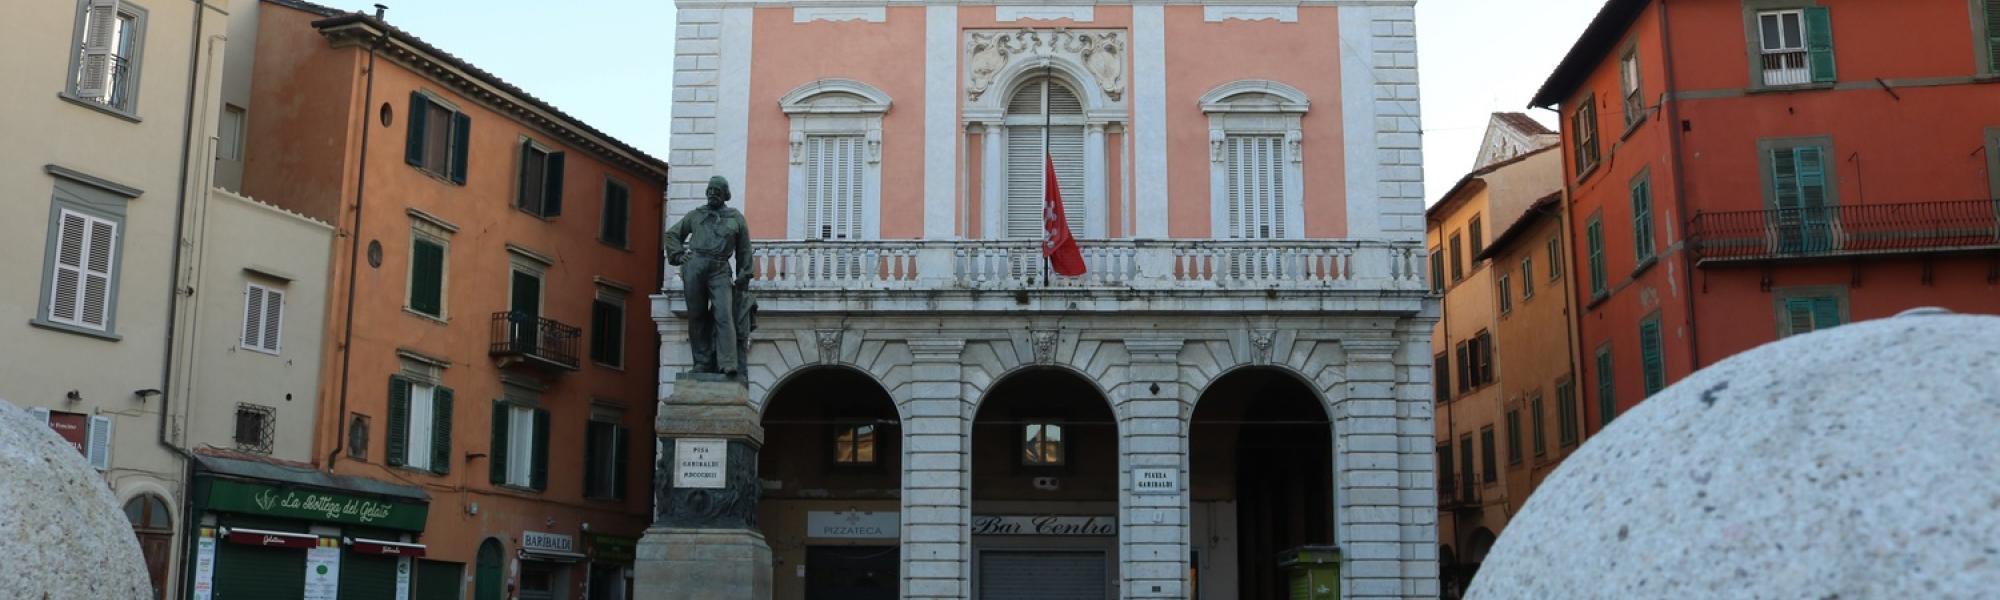 Piazza Garibaldi - Casino dei nobili (A. Matteucci)